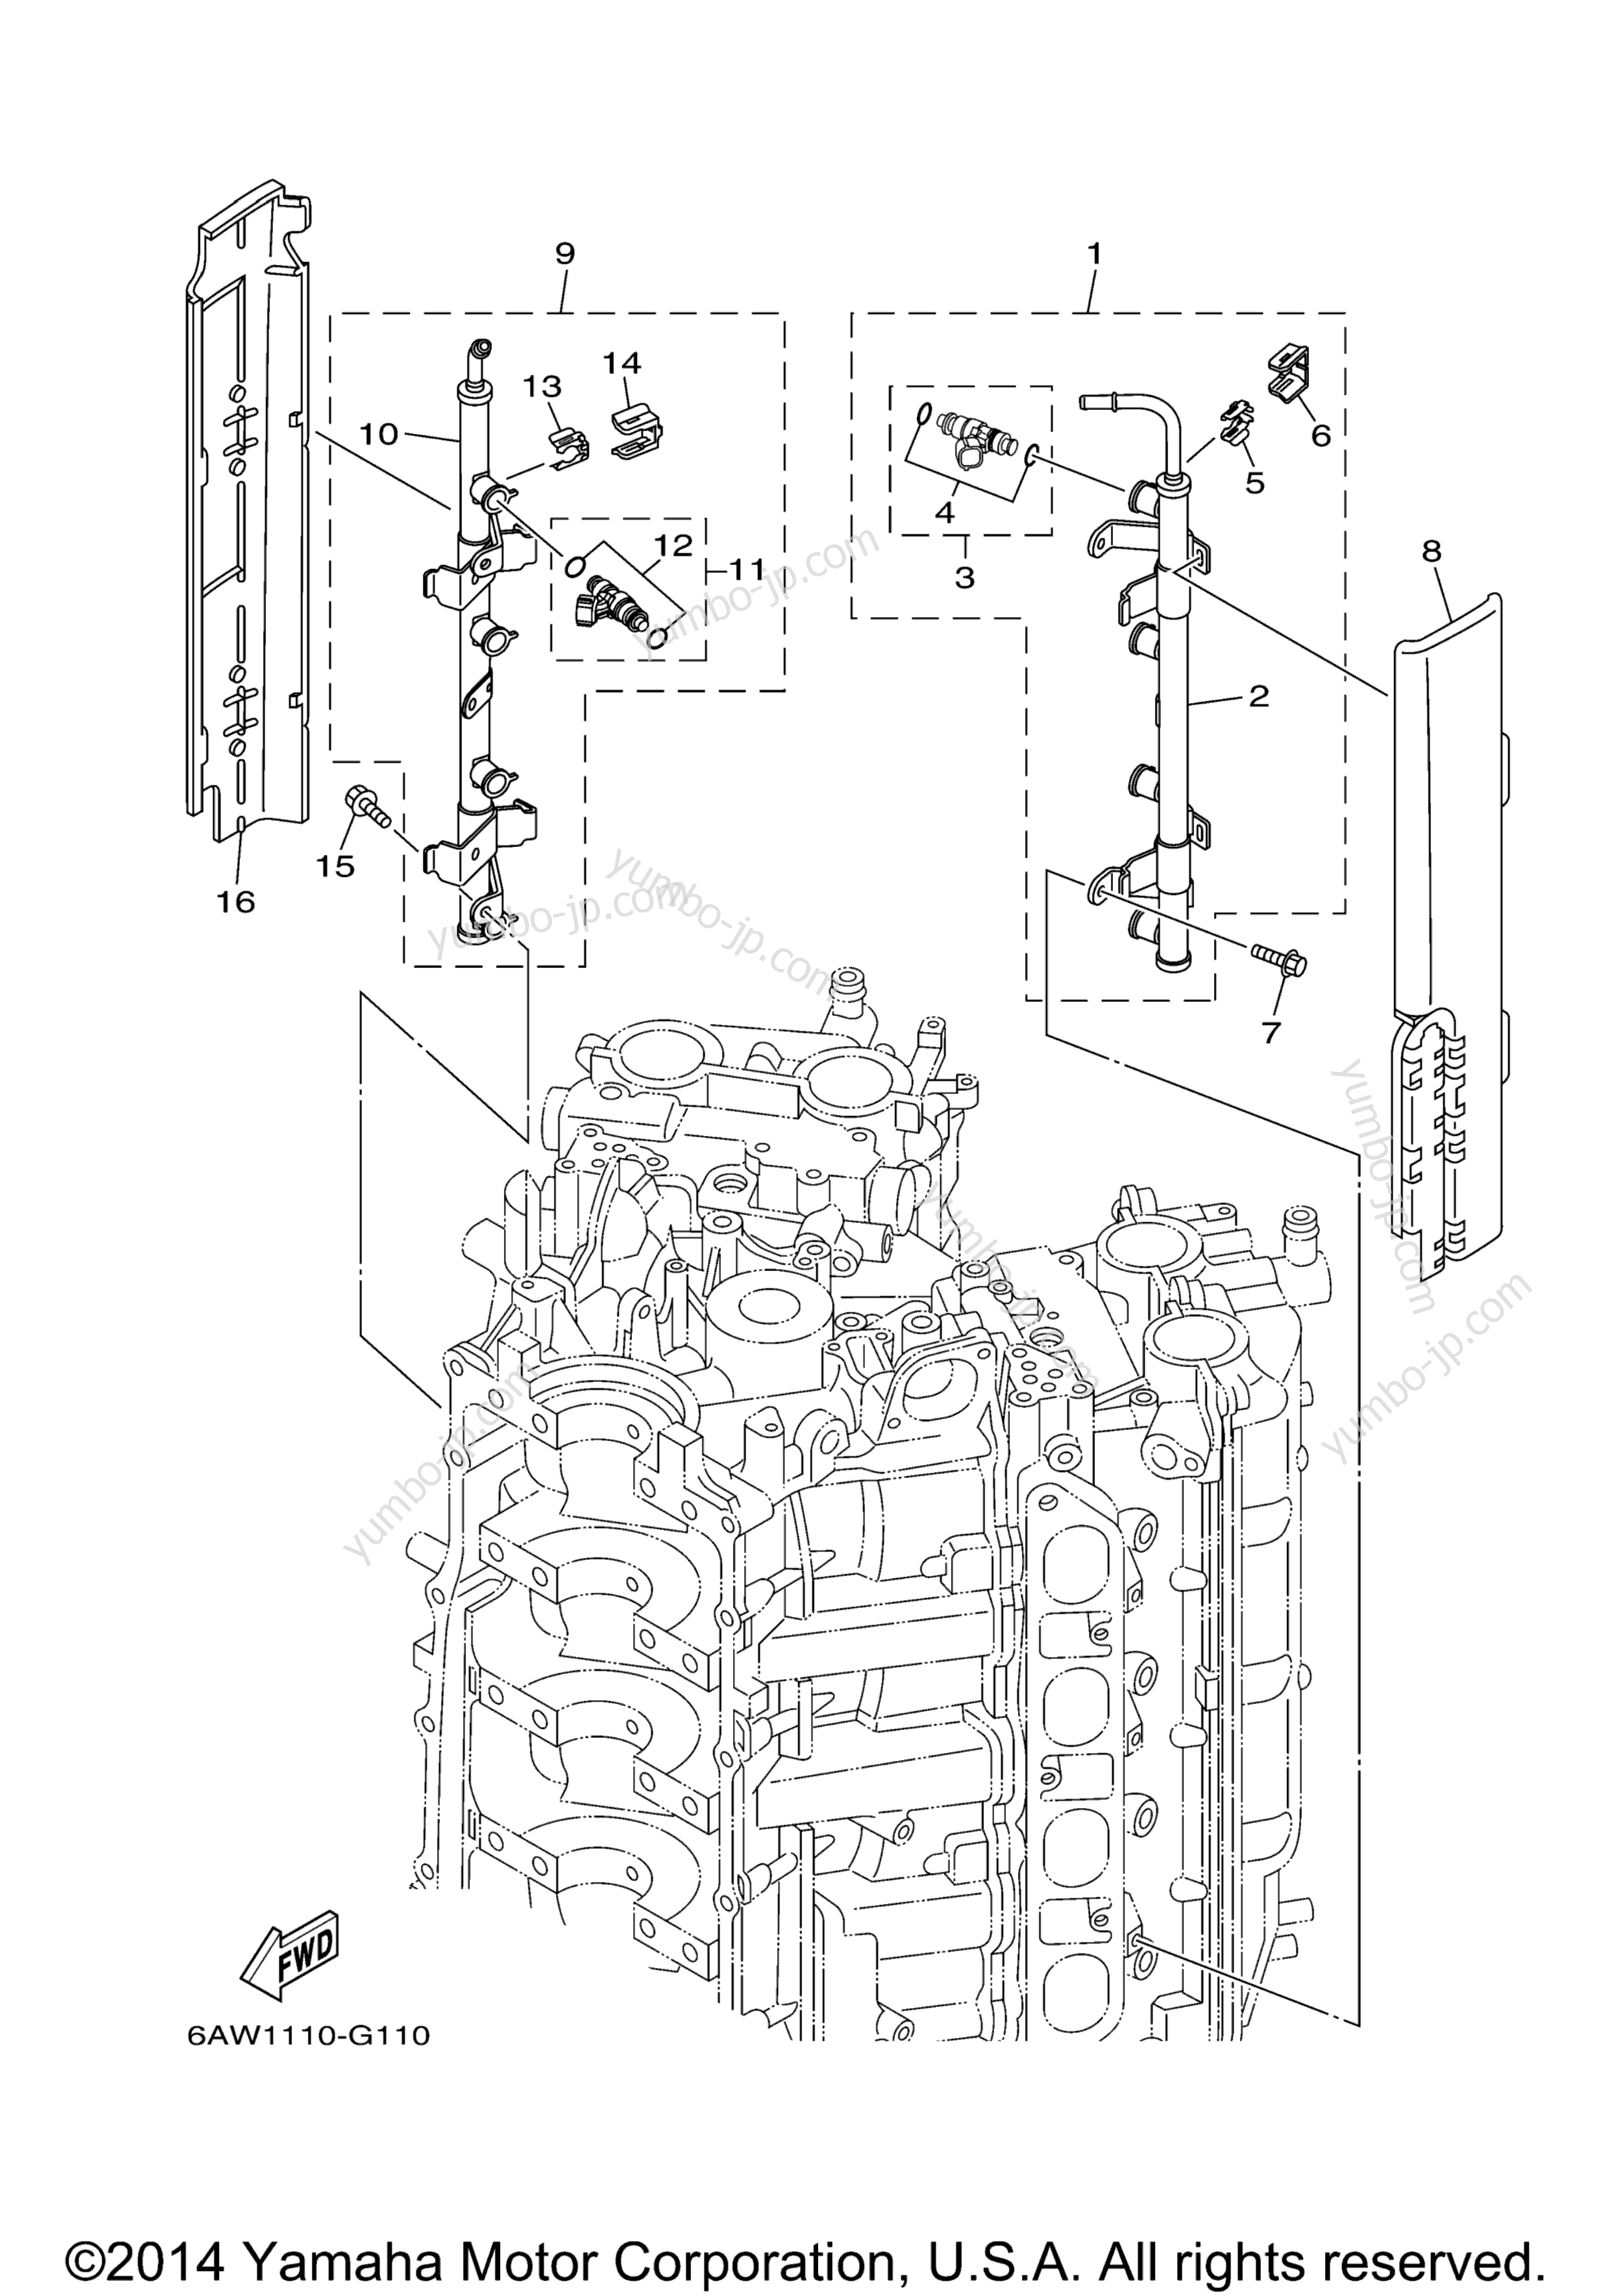 Throttle Body Assy 2 для лодочных моторов YAMAHA F350TXR (0408) 2006 г.